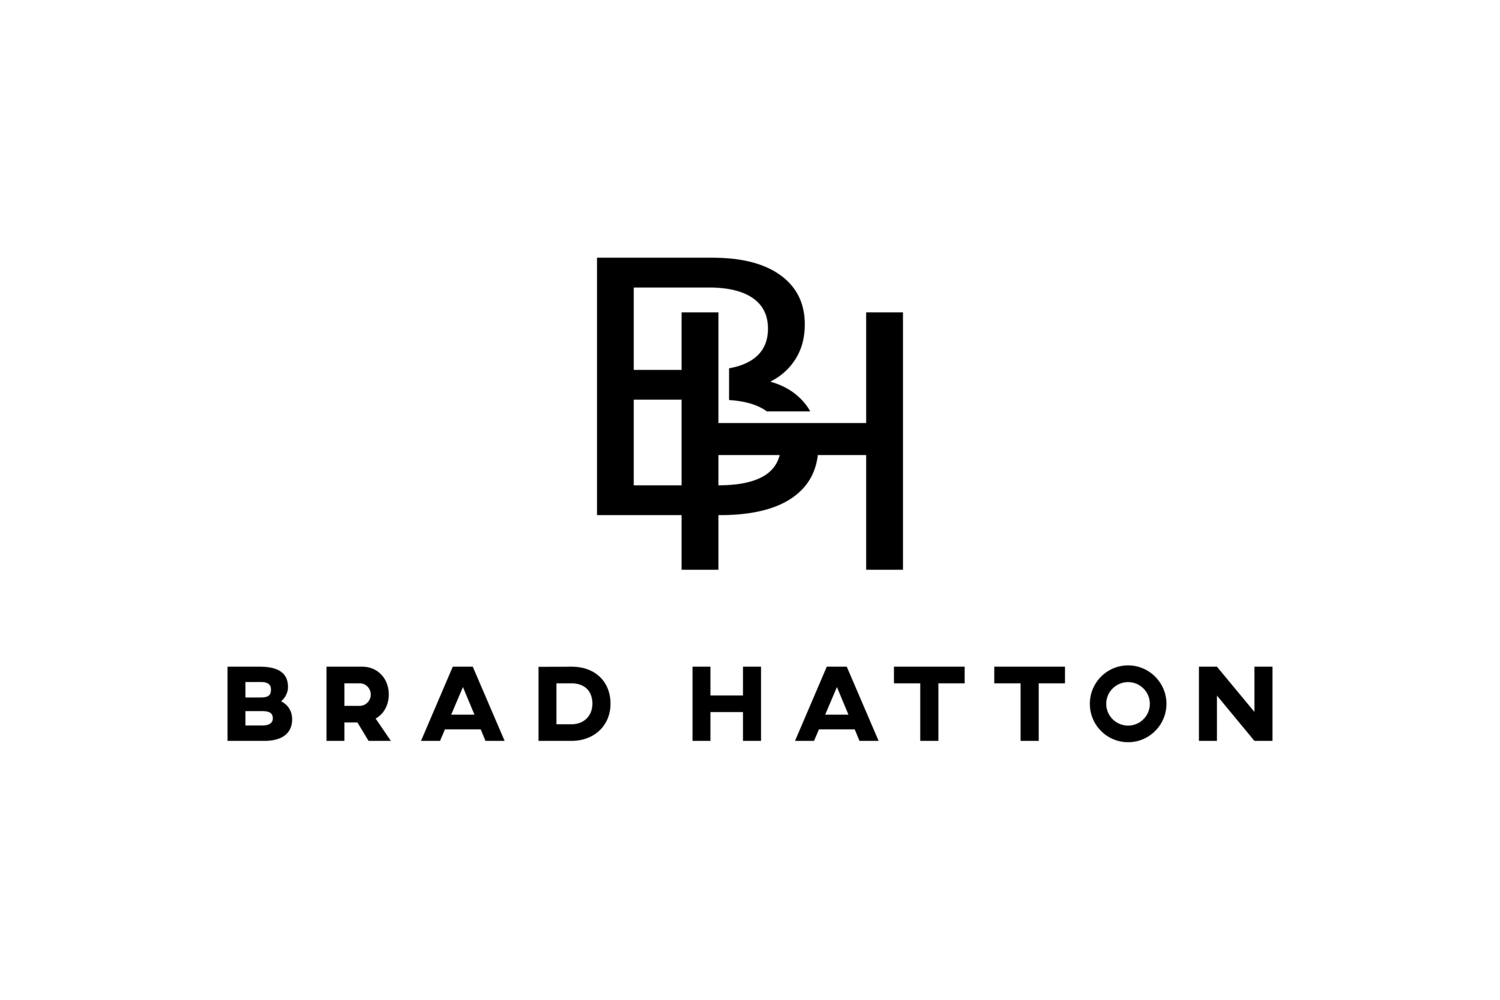 Brad Hatton